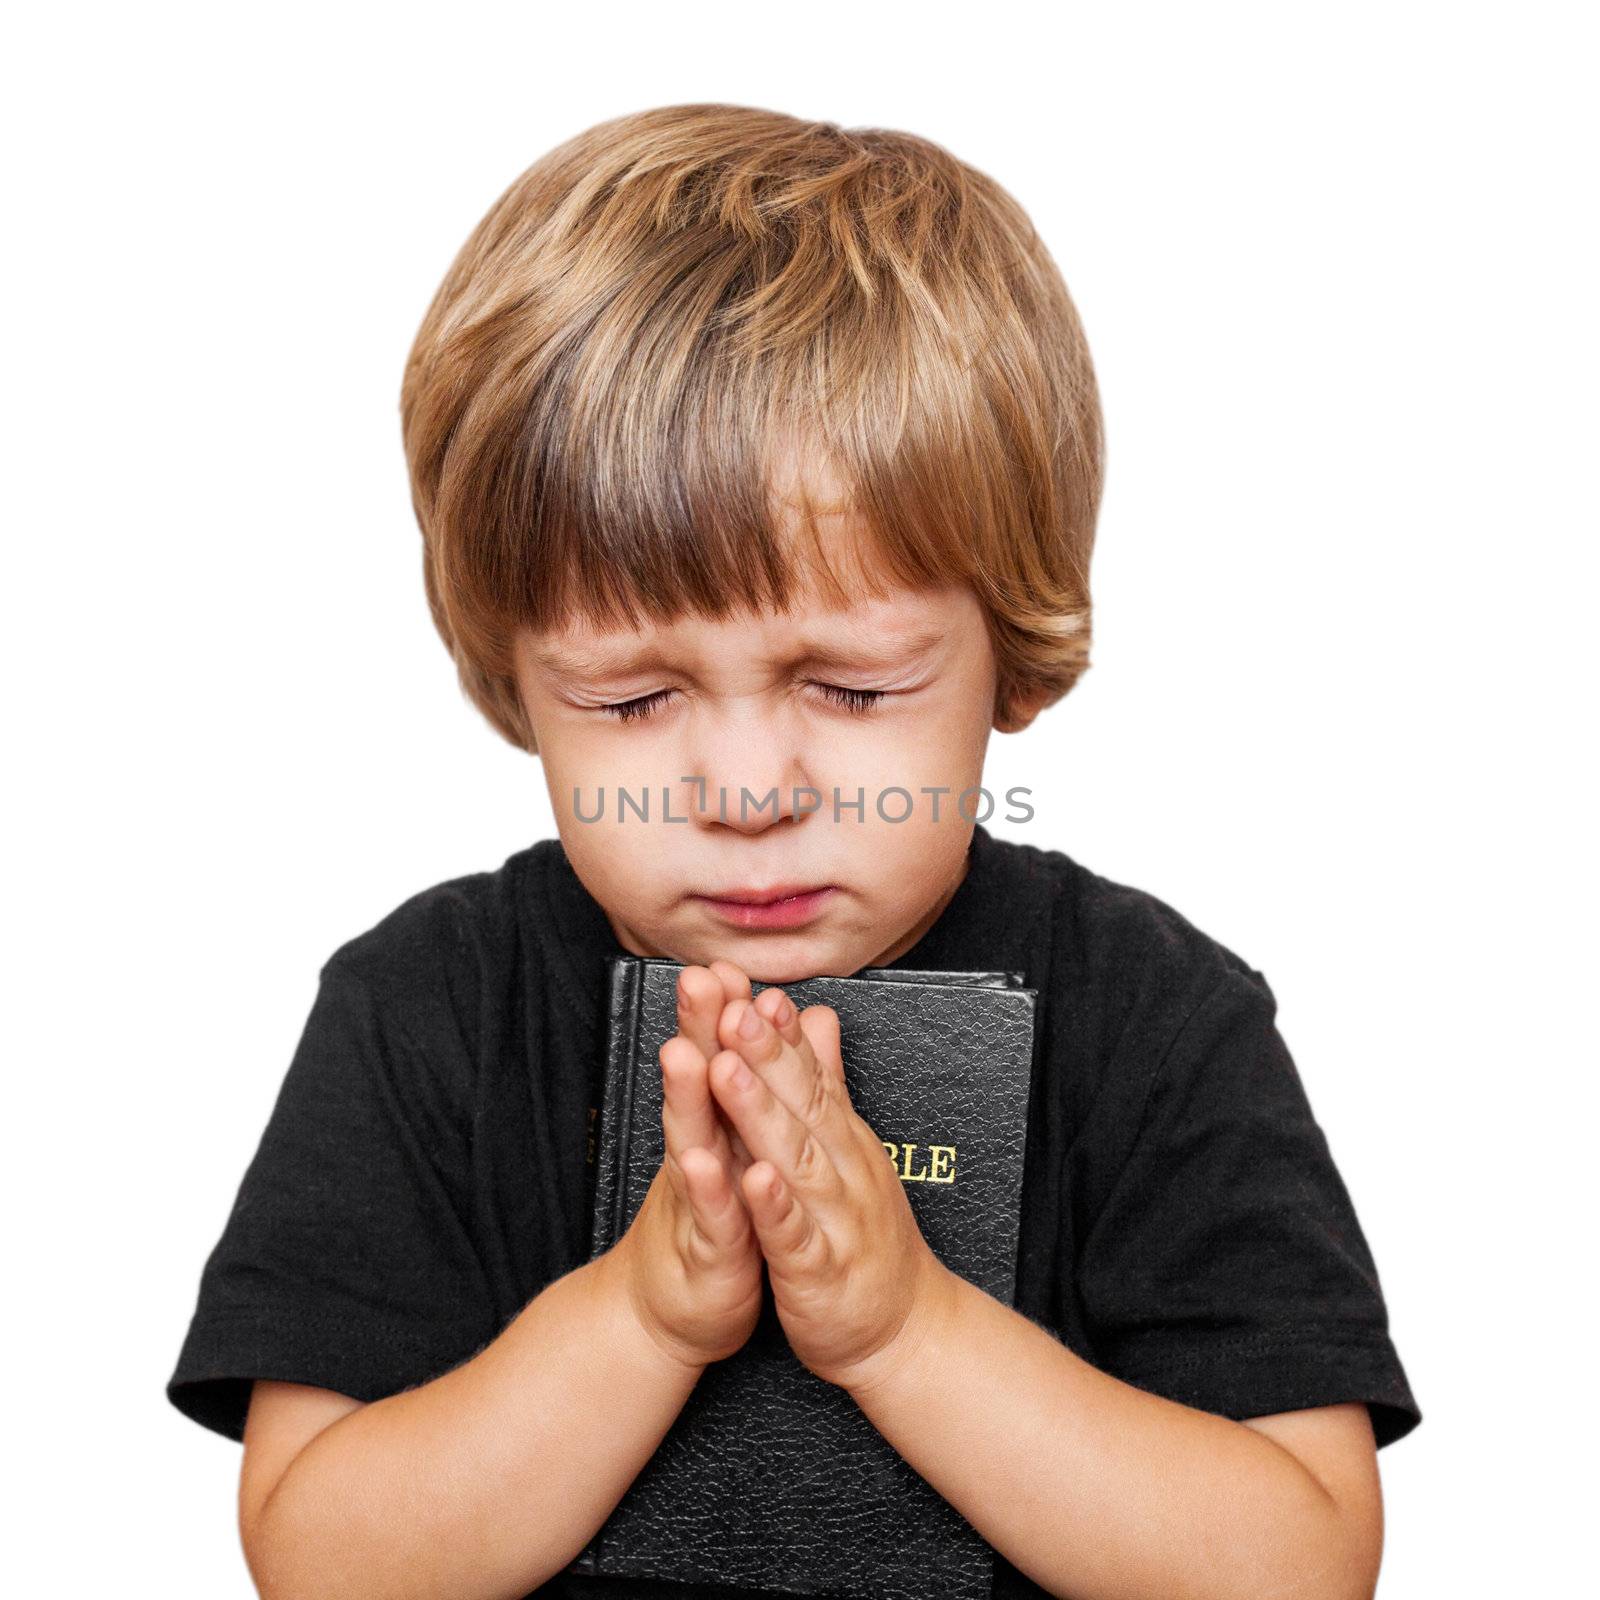 Little boy praying by anelina